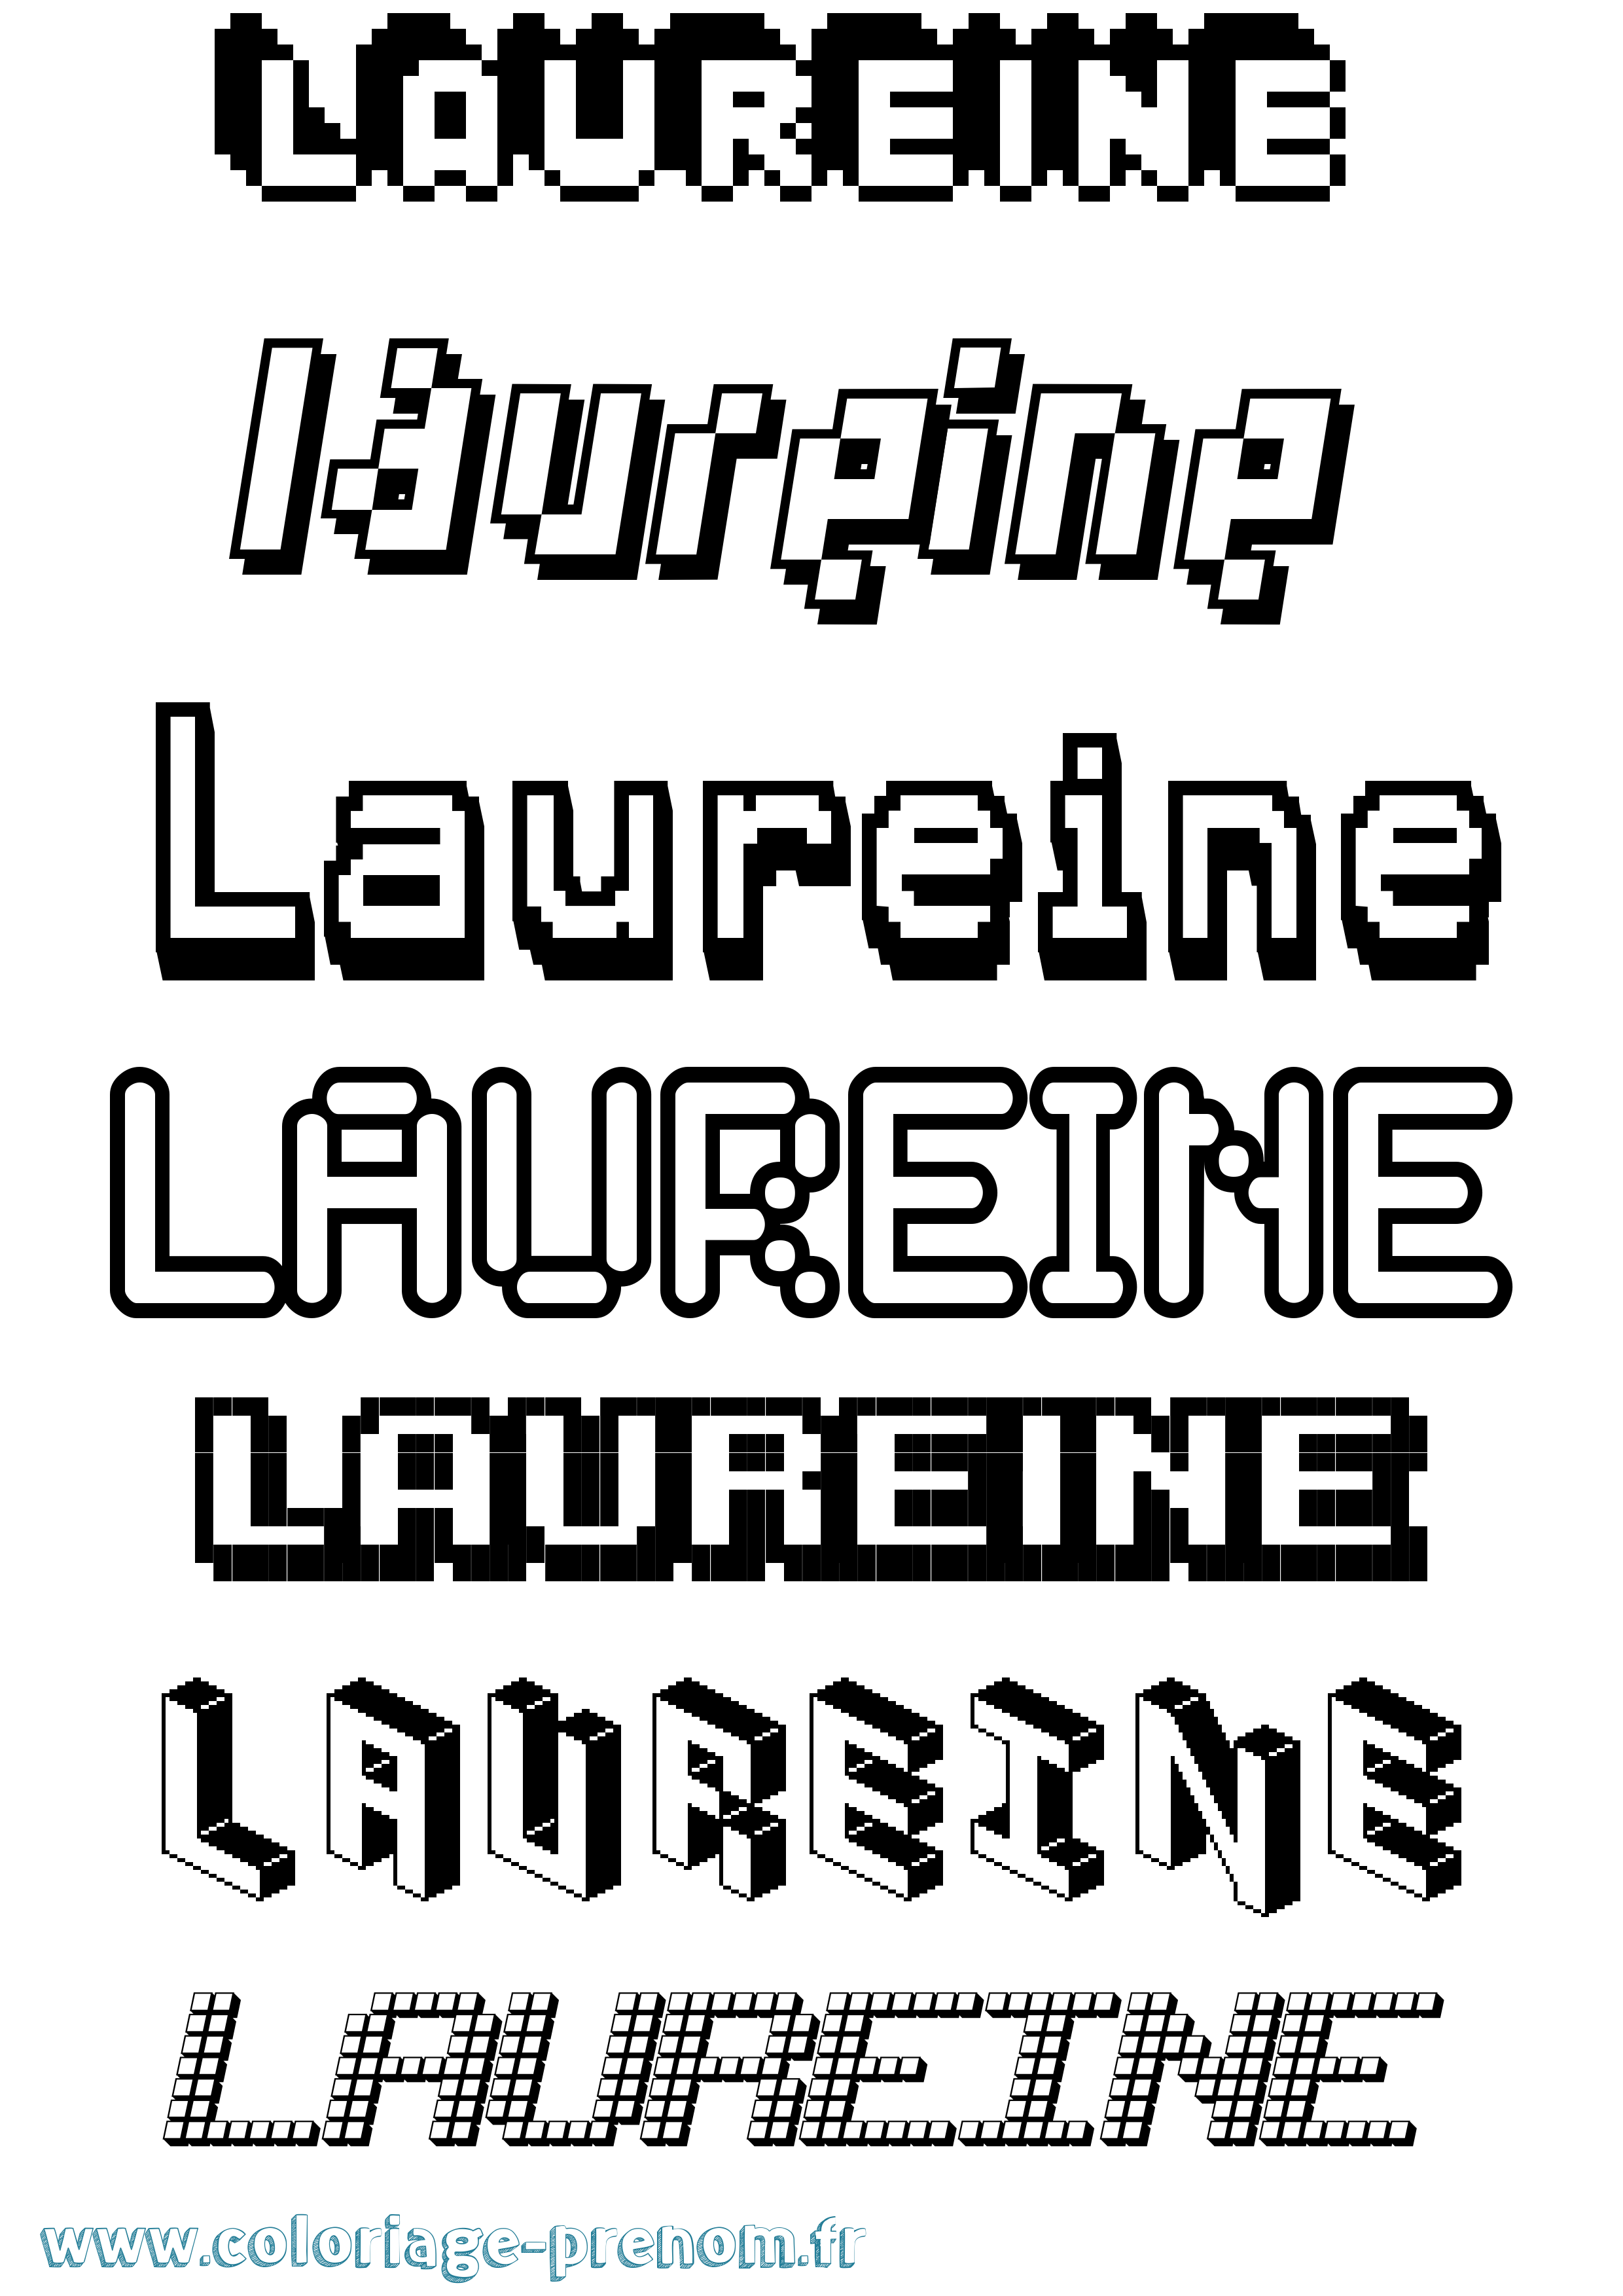 Coloriage prénom Laureine Pixel